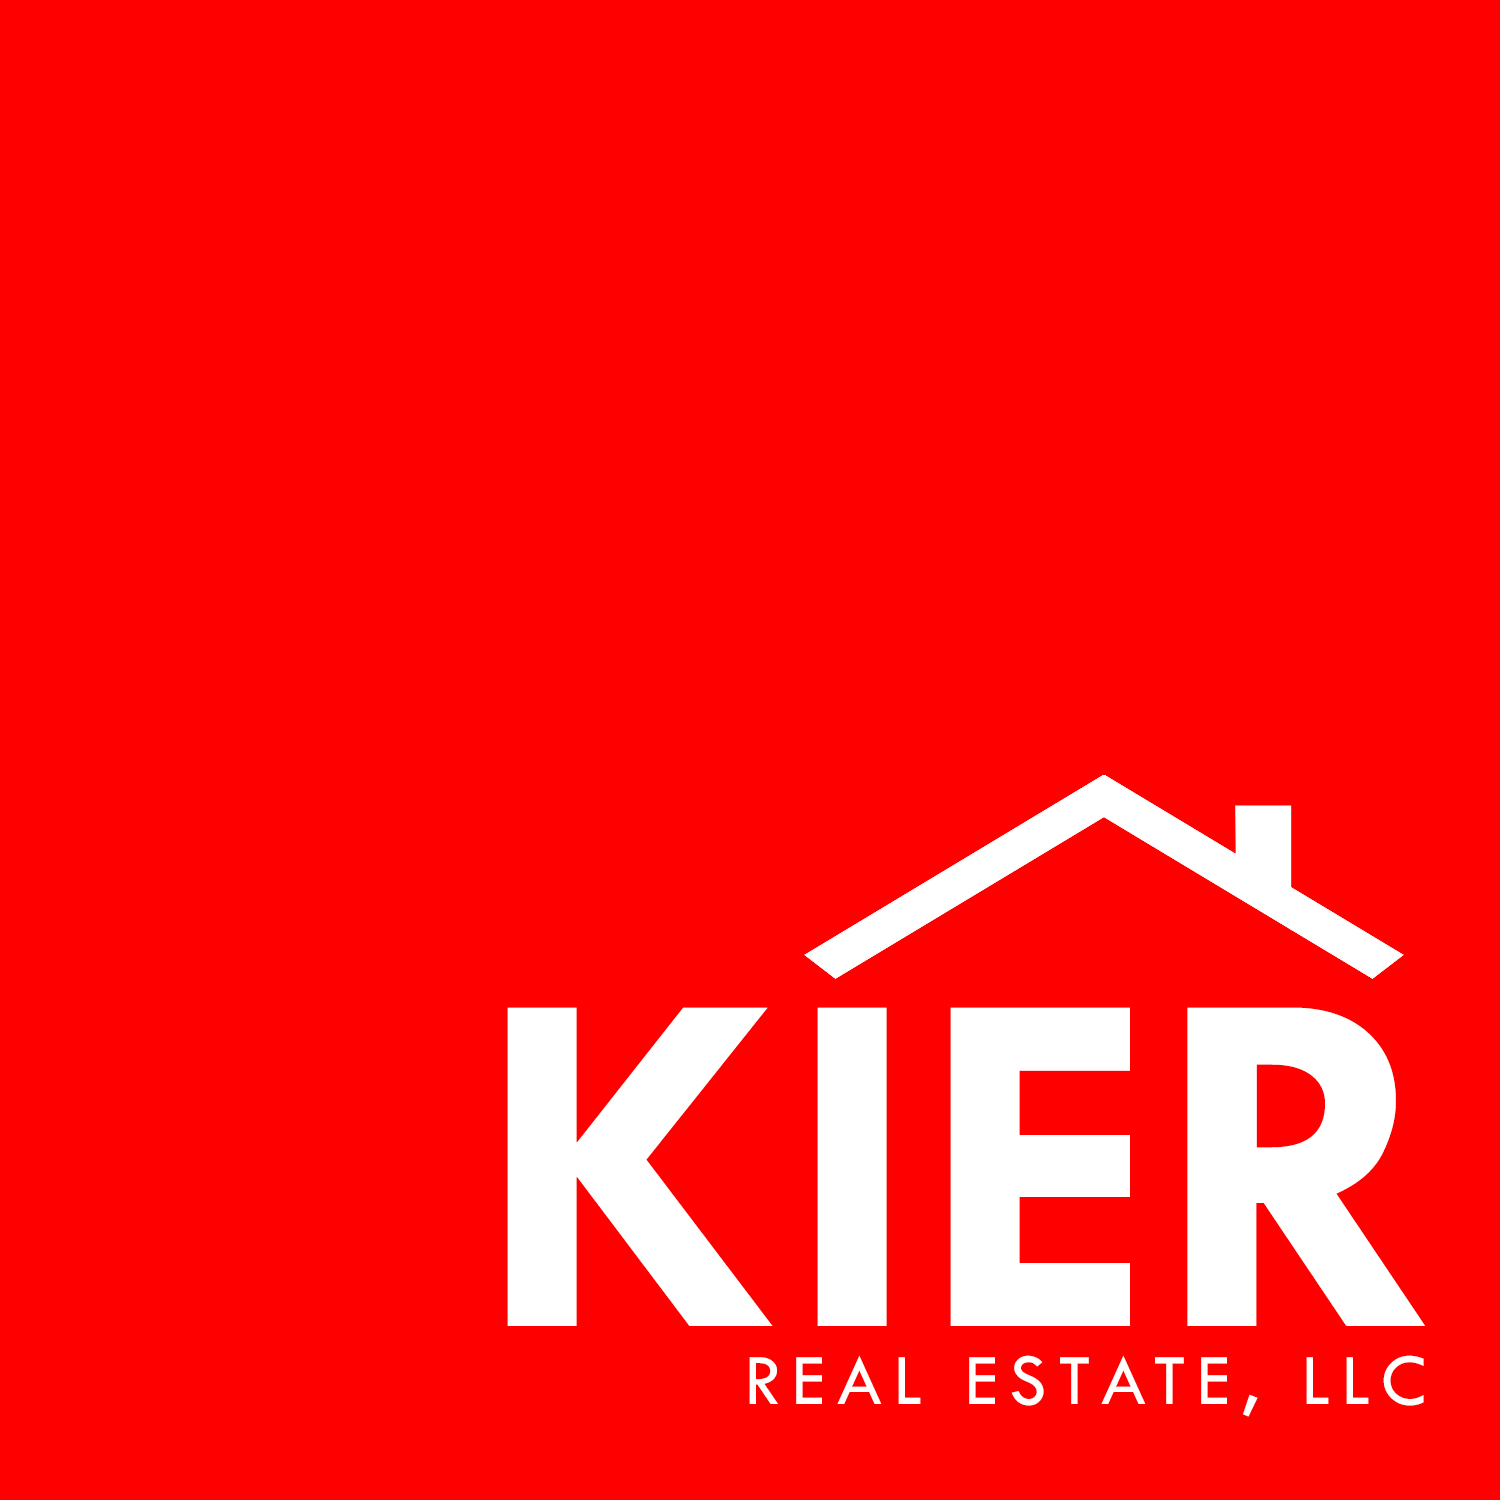 Kier Realestate, LLC